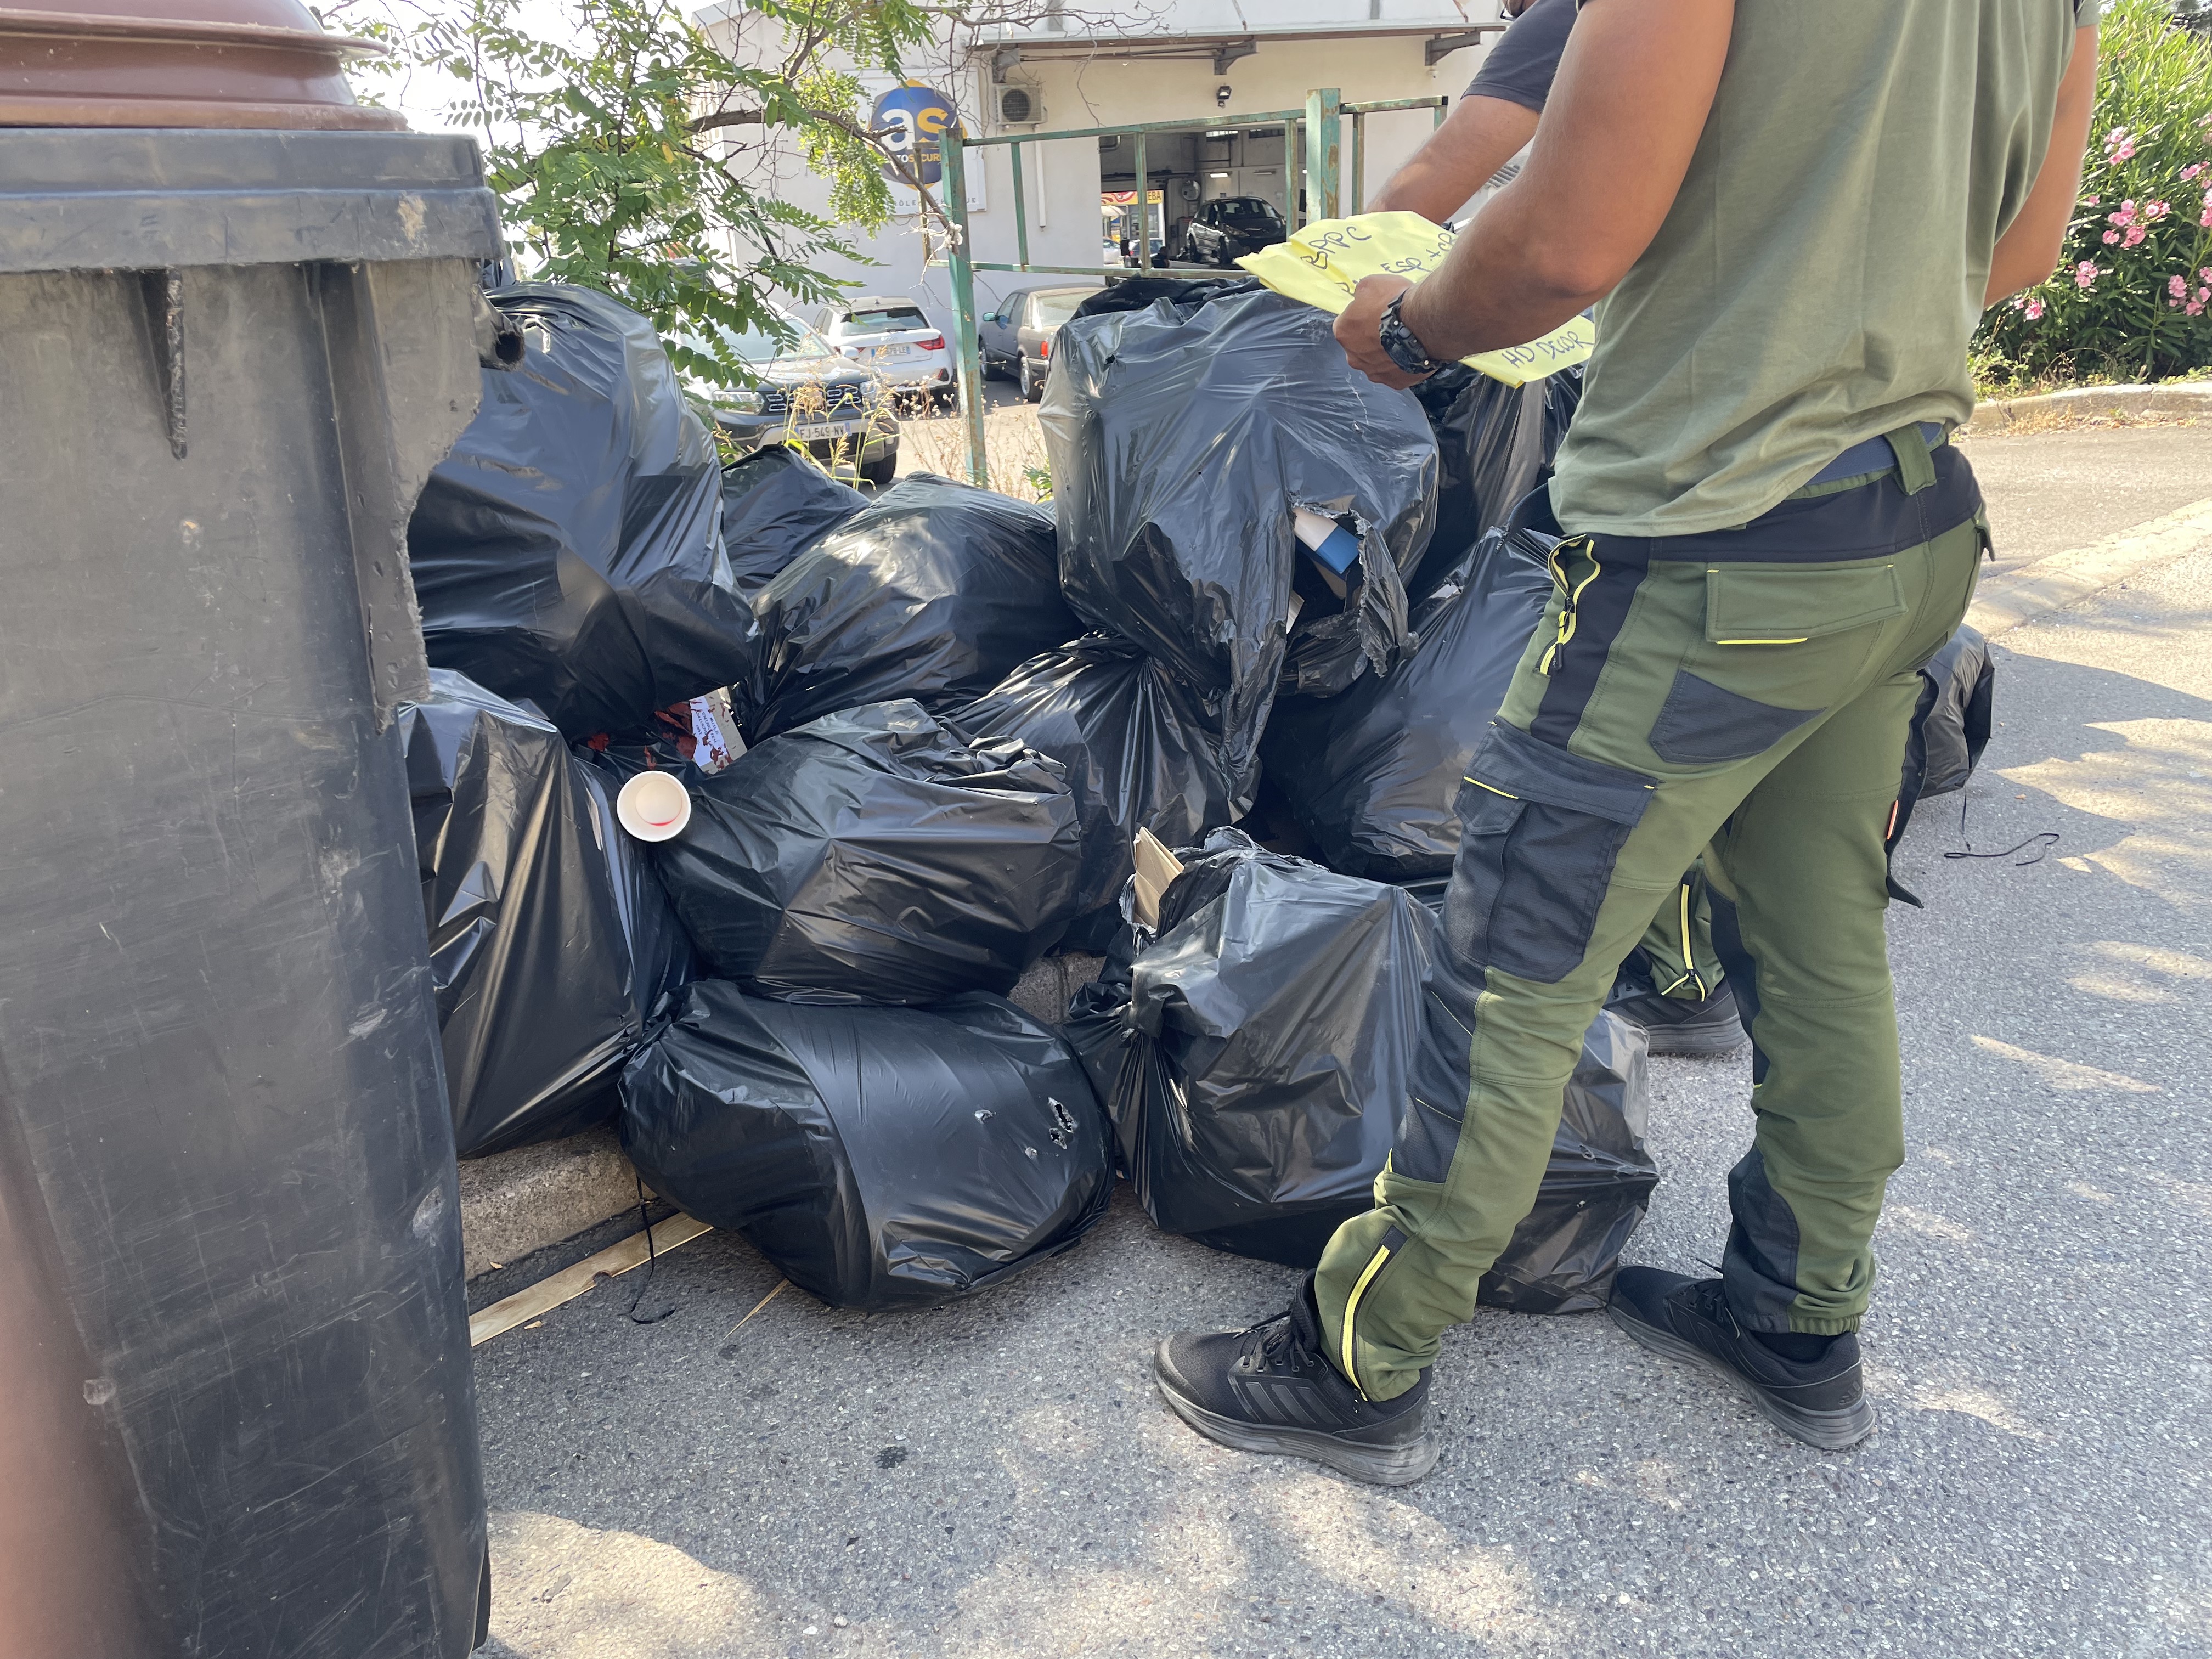 Les agents de la brigade verte examinent le contenu des poubelles à la recherche d'indices.